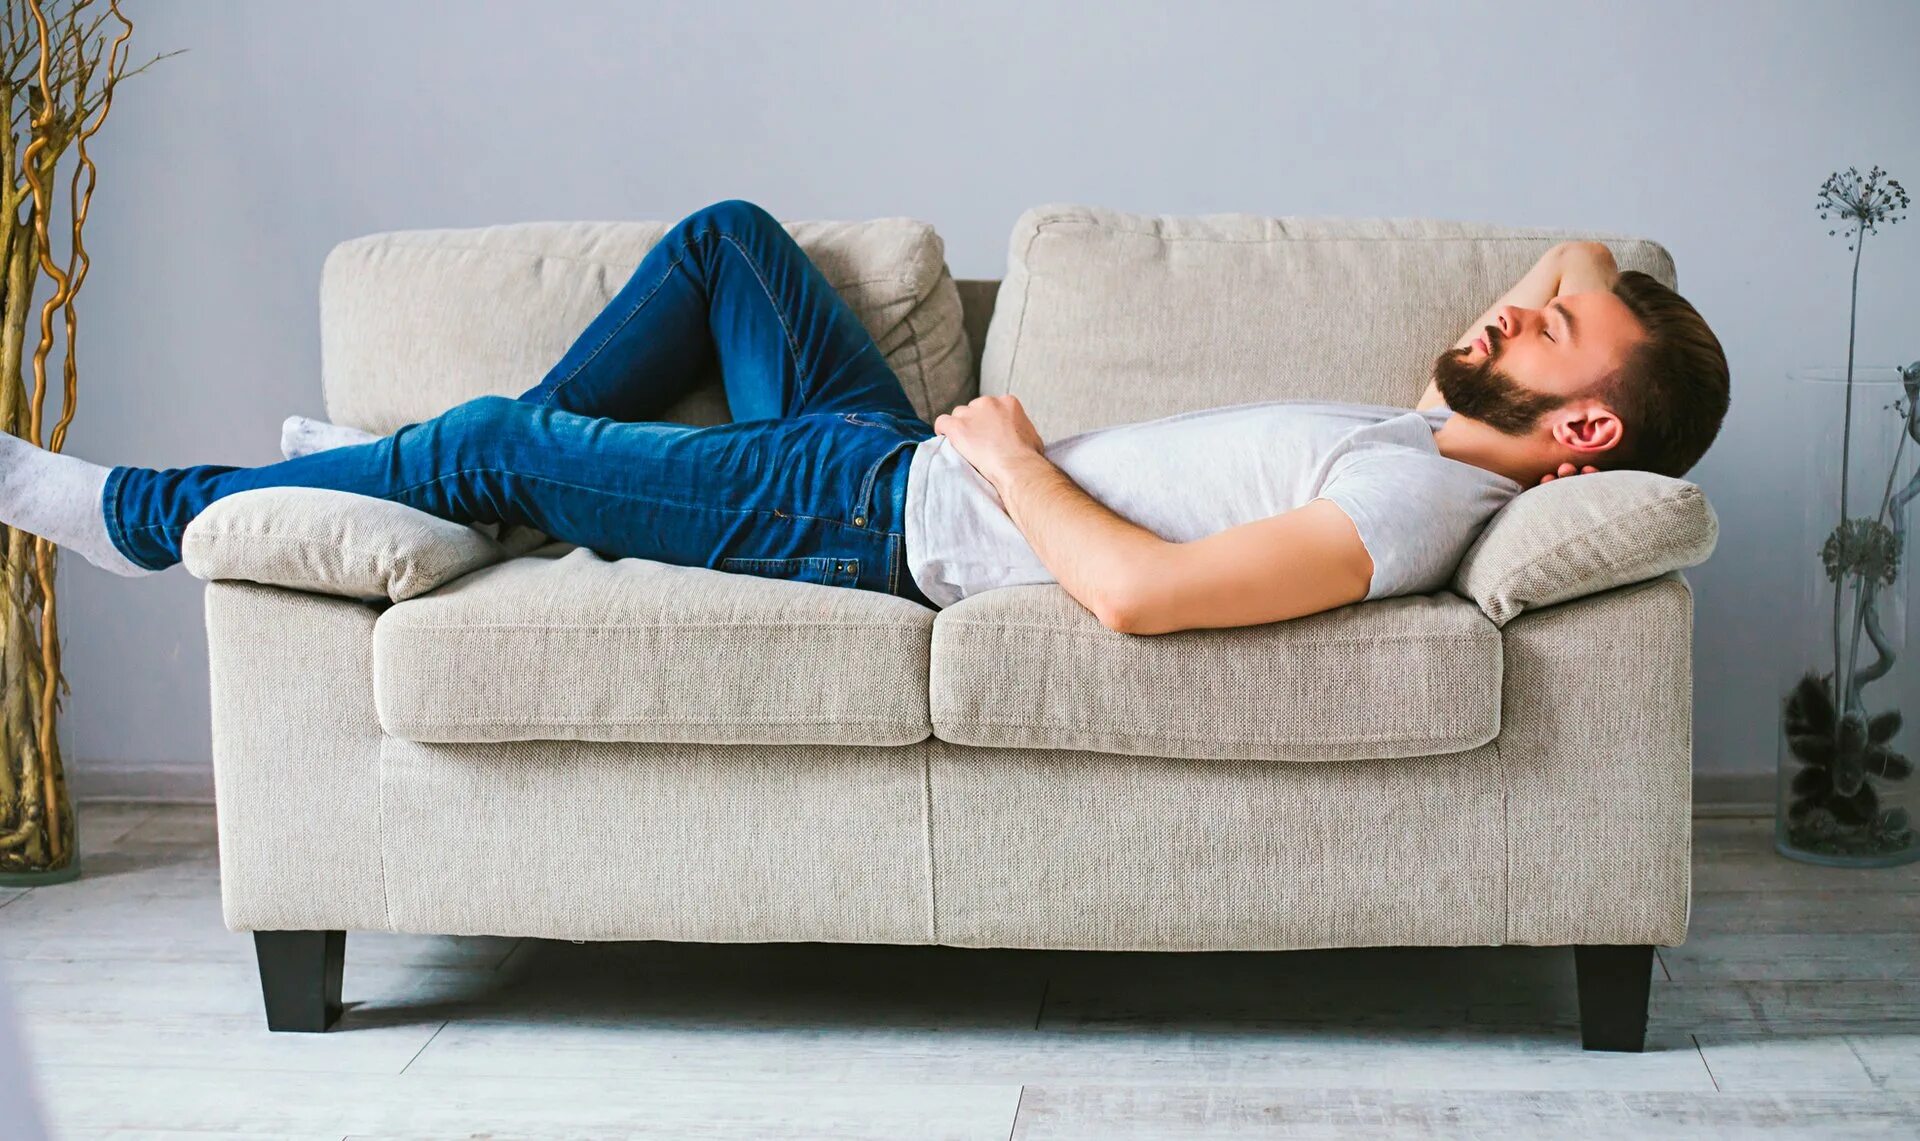 Человек лежит на диване. Мужчина на диване. Парень лежит на диване. Человек отдыхает на диване.